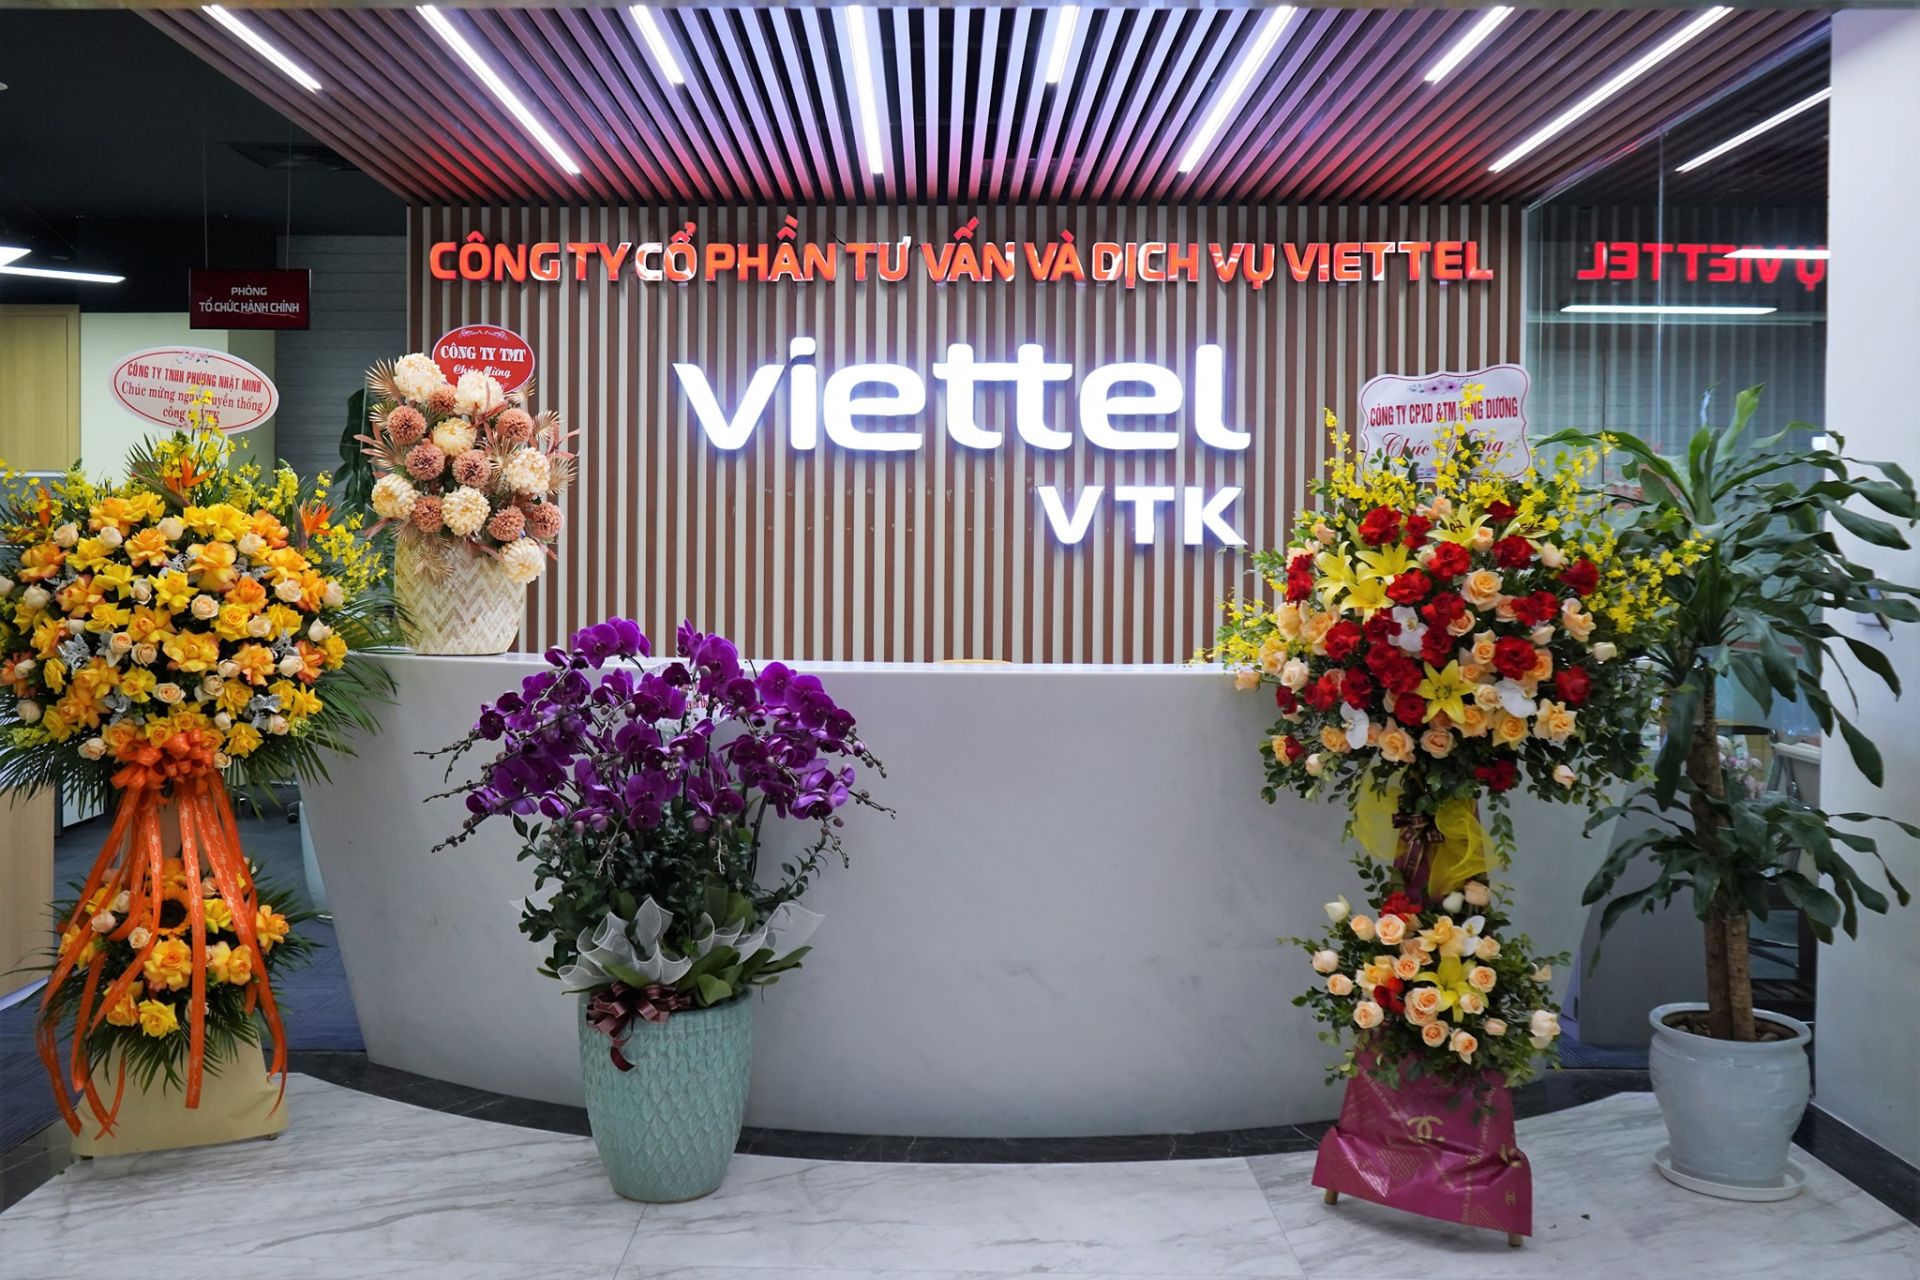 Tư Vấn Và Dịch Vụ Viettel lập kế hoạch tăng vốn lên 86 tỷ đồng